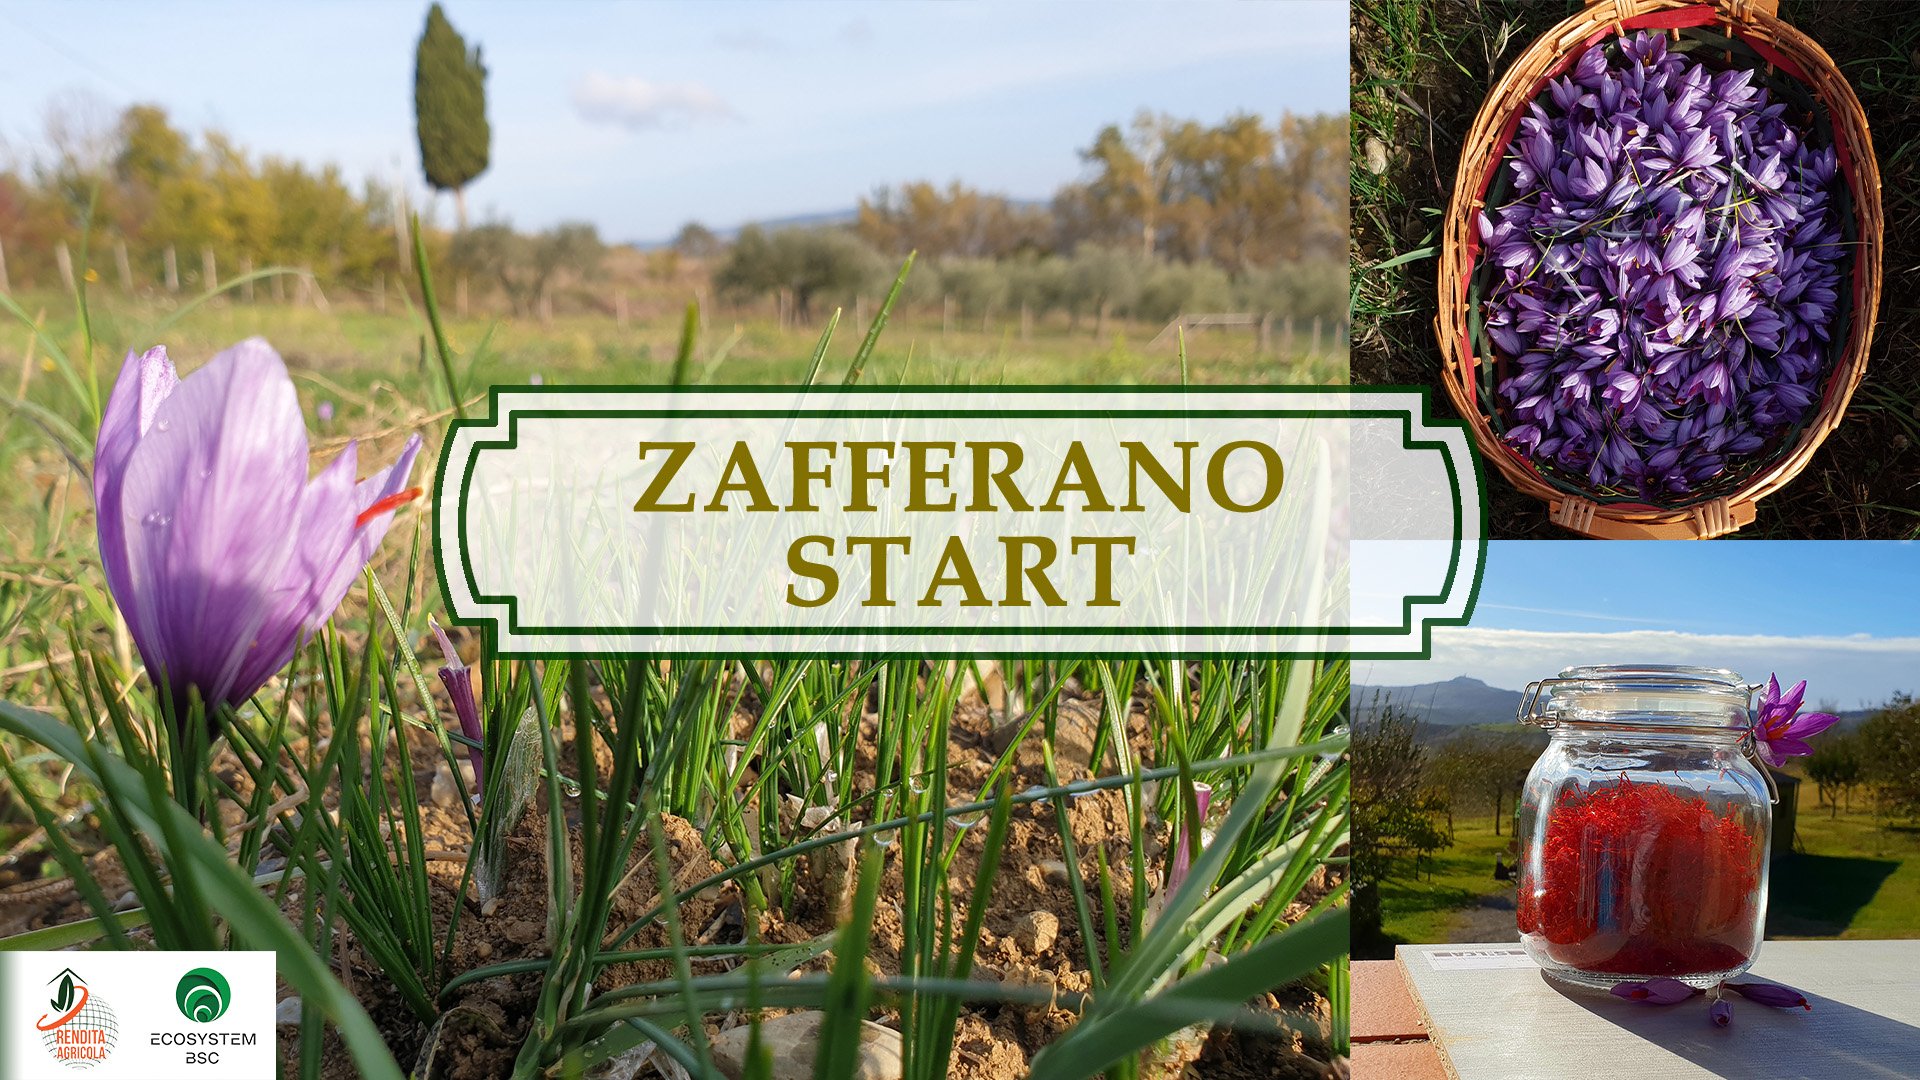 Zafferano START